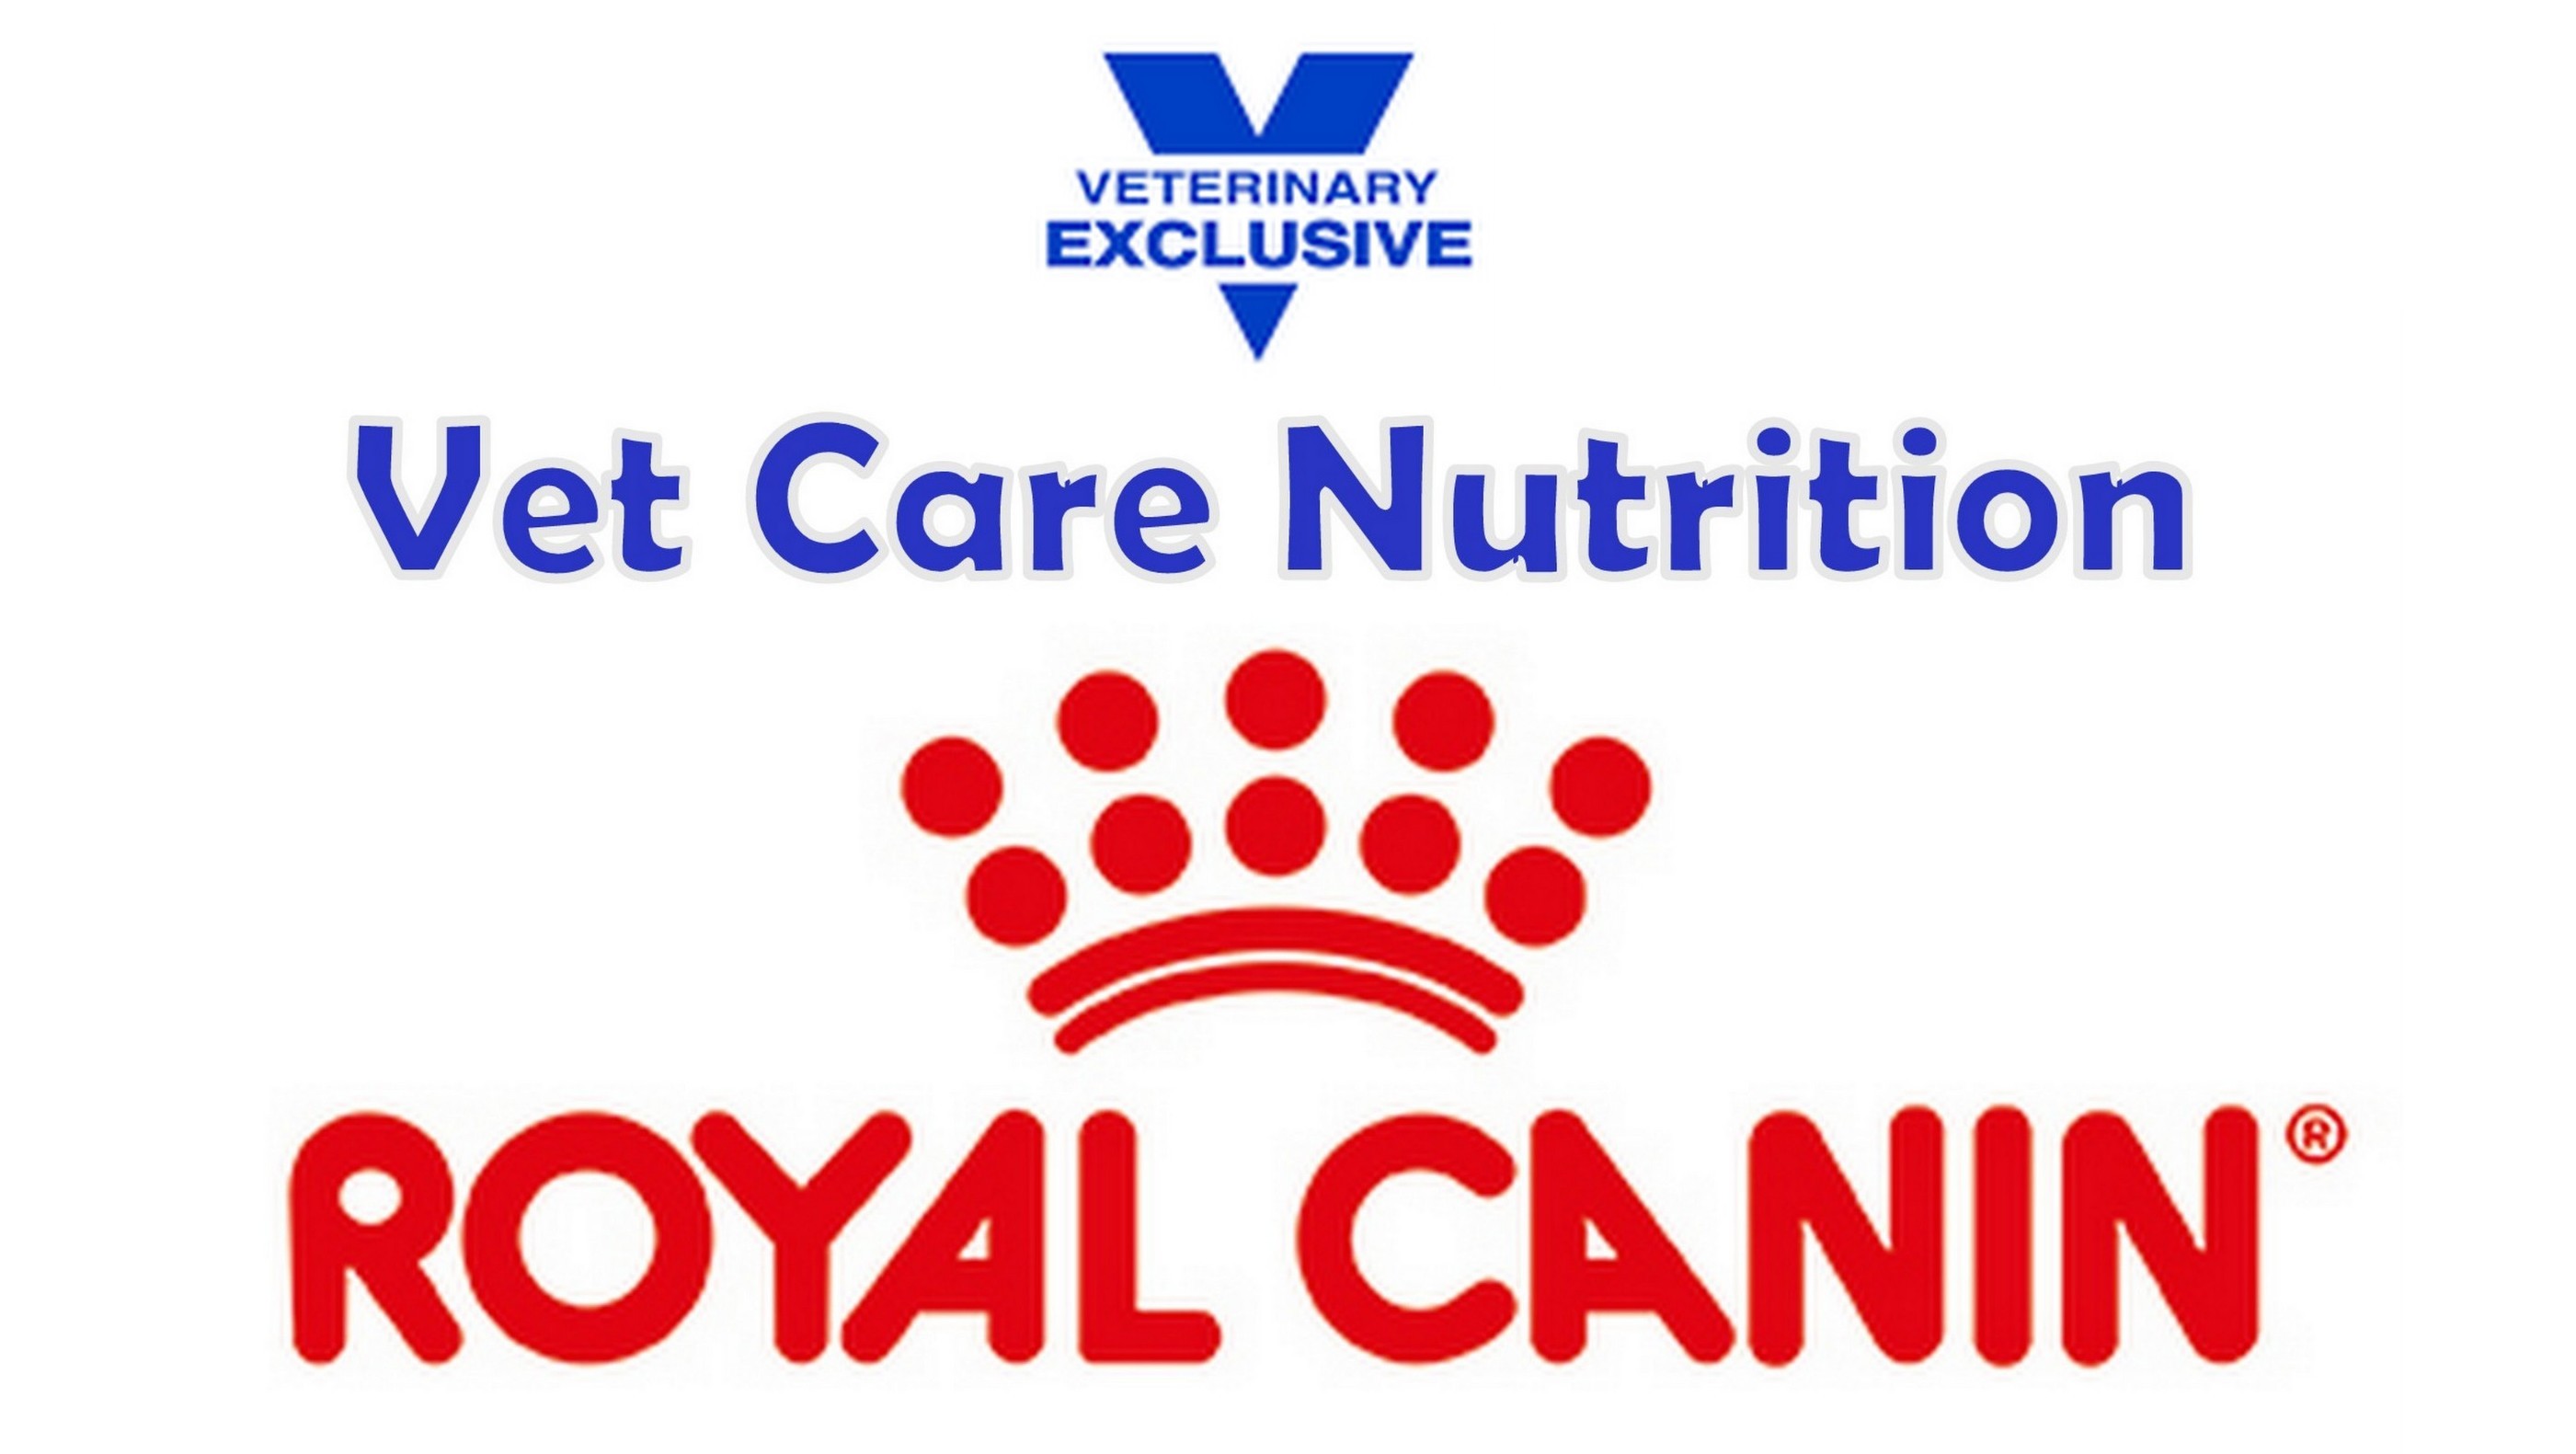 RoyalCanin Vet Care Nut